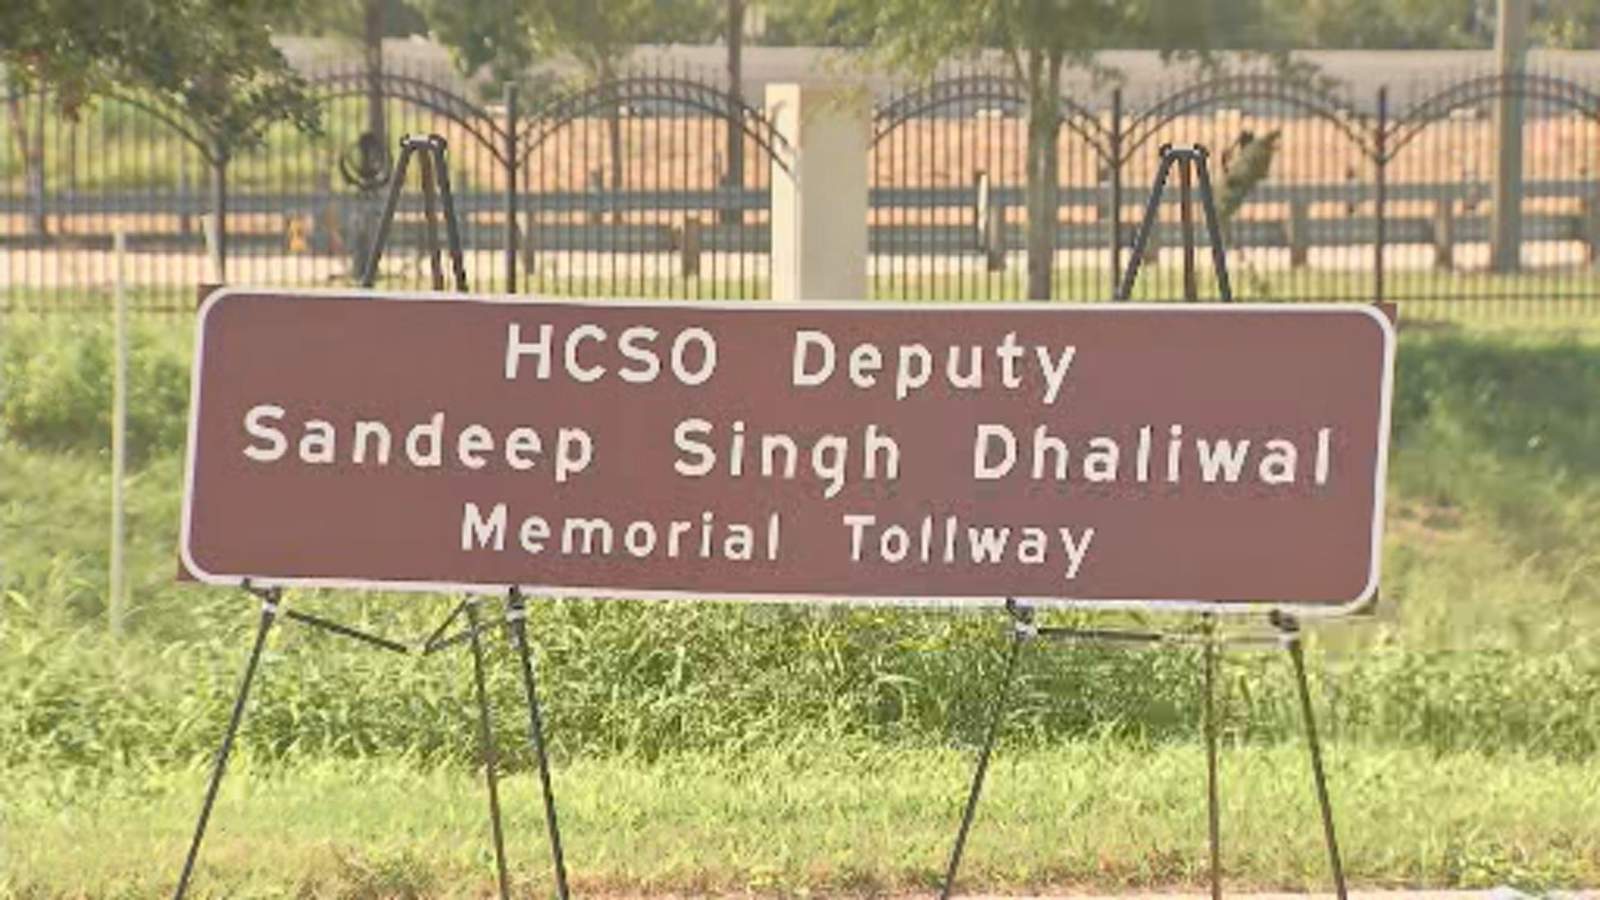 Portion of Beltway renamed in honor of Deputy Sandeep Dhaliwal